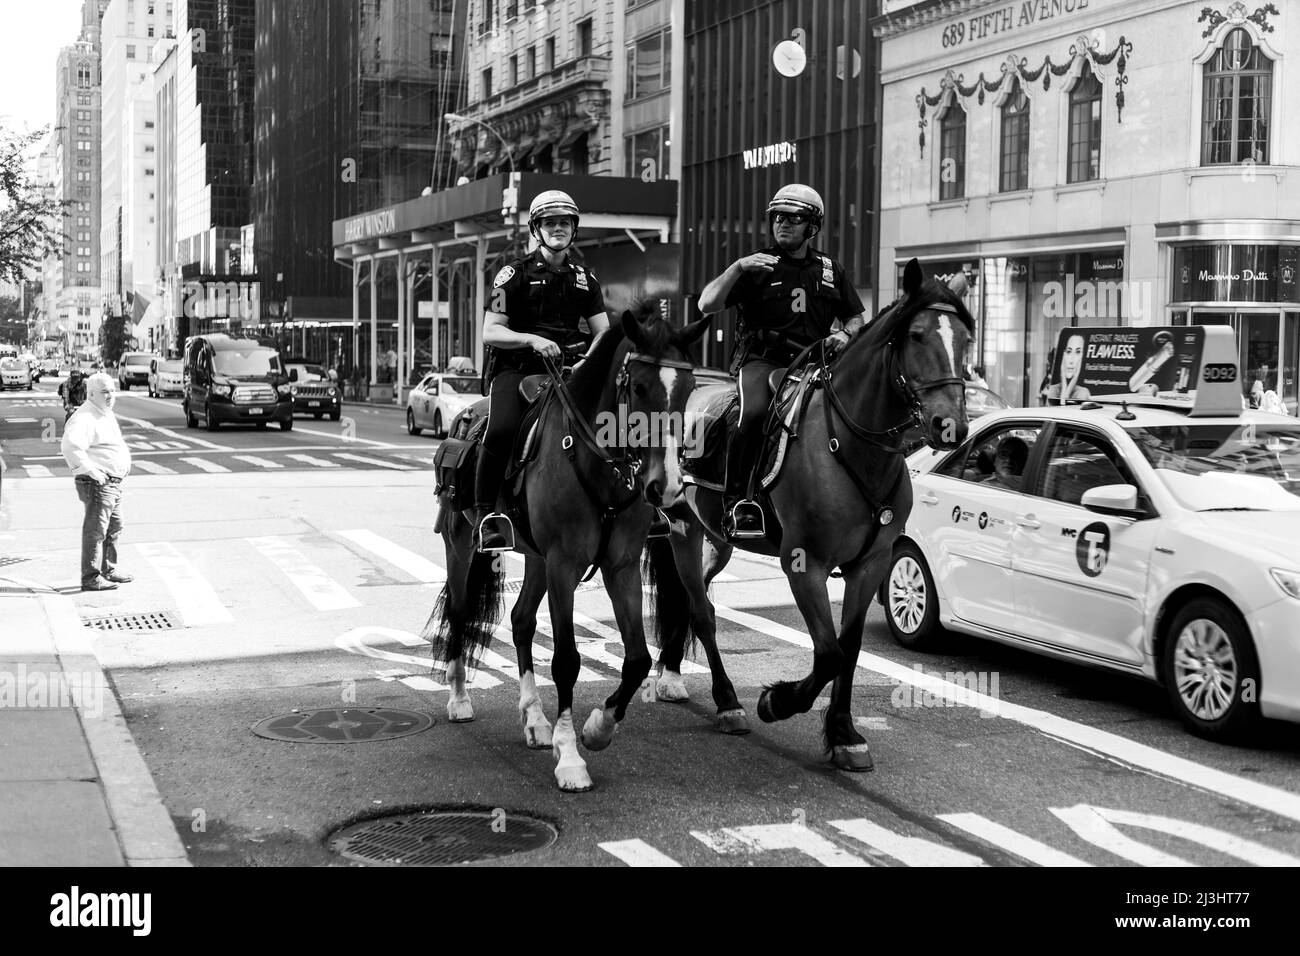 5 Ave/E 55 Street, Nueva York, NY, EE.UU., NYPD Unidad montada con dos oficiales de patrulla y caballos en servicio en la Quinta Avenida Foto de stock